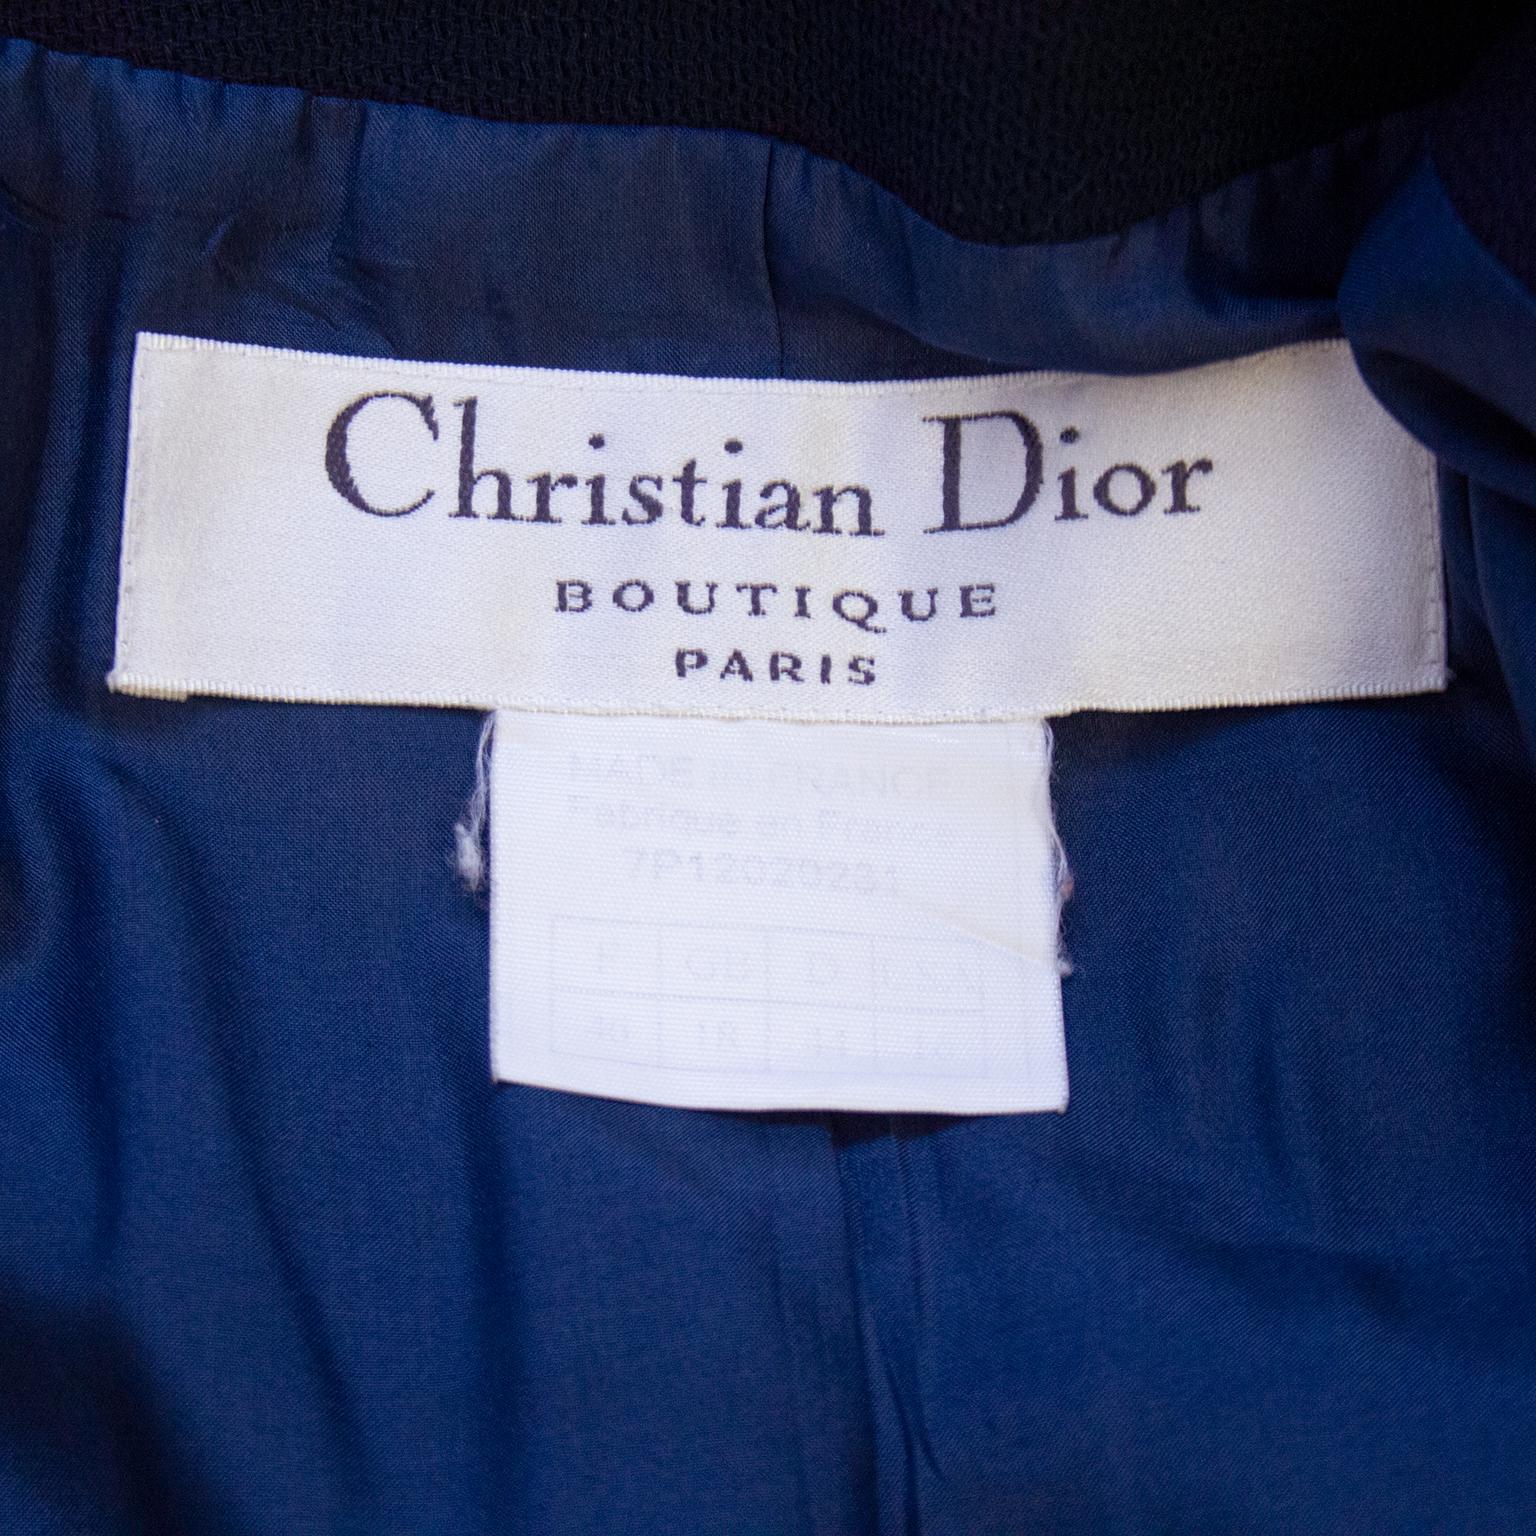 Women's 1990s Christian Dior Navy Blue Blazer with Crest